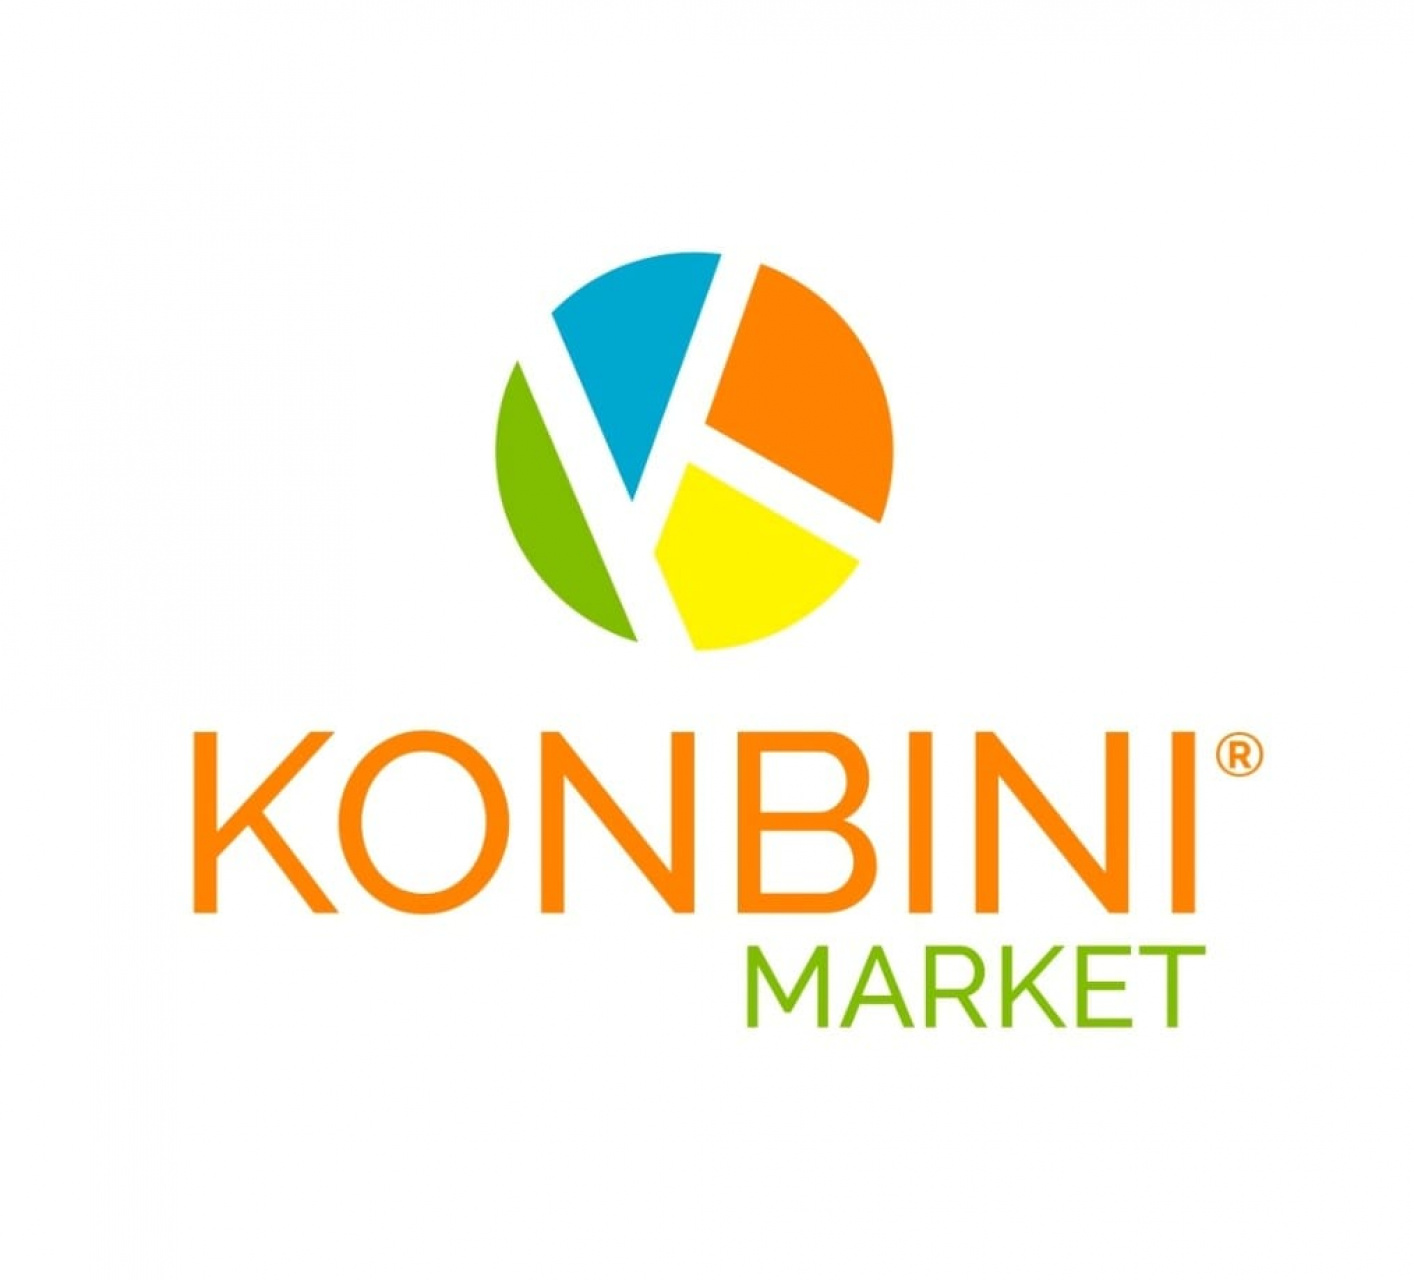 Konbini Market